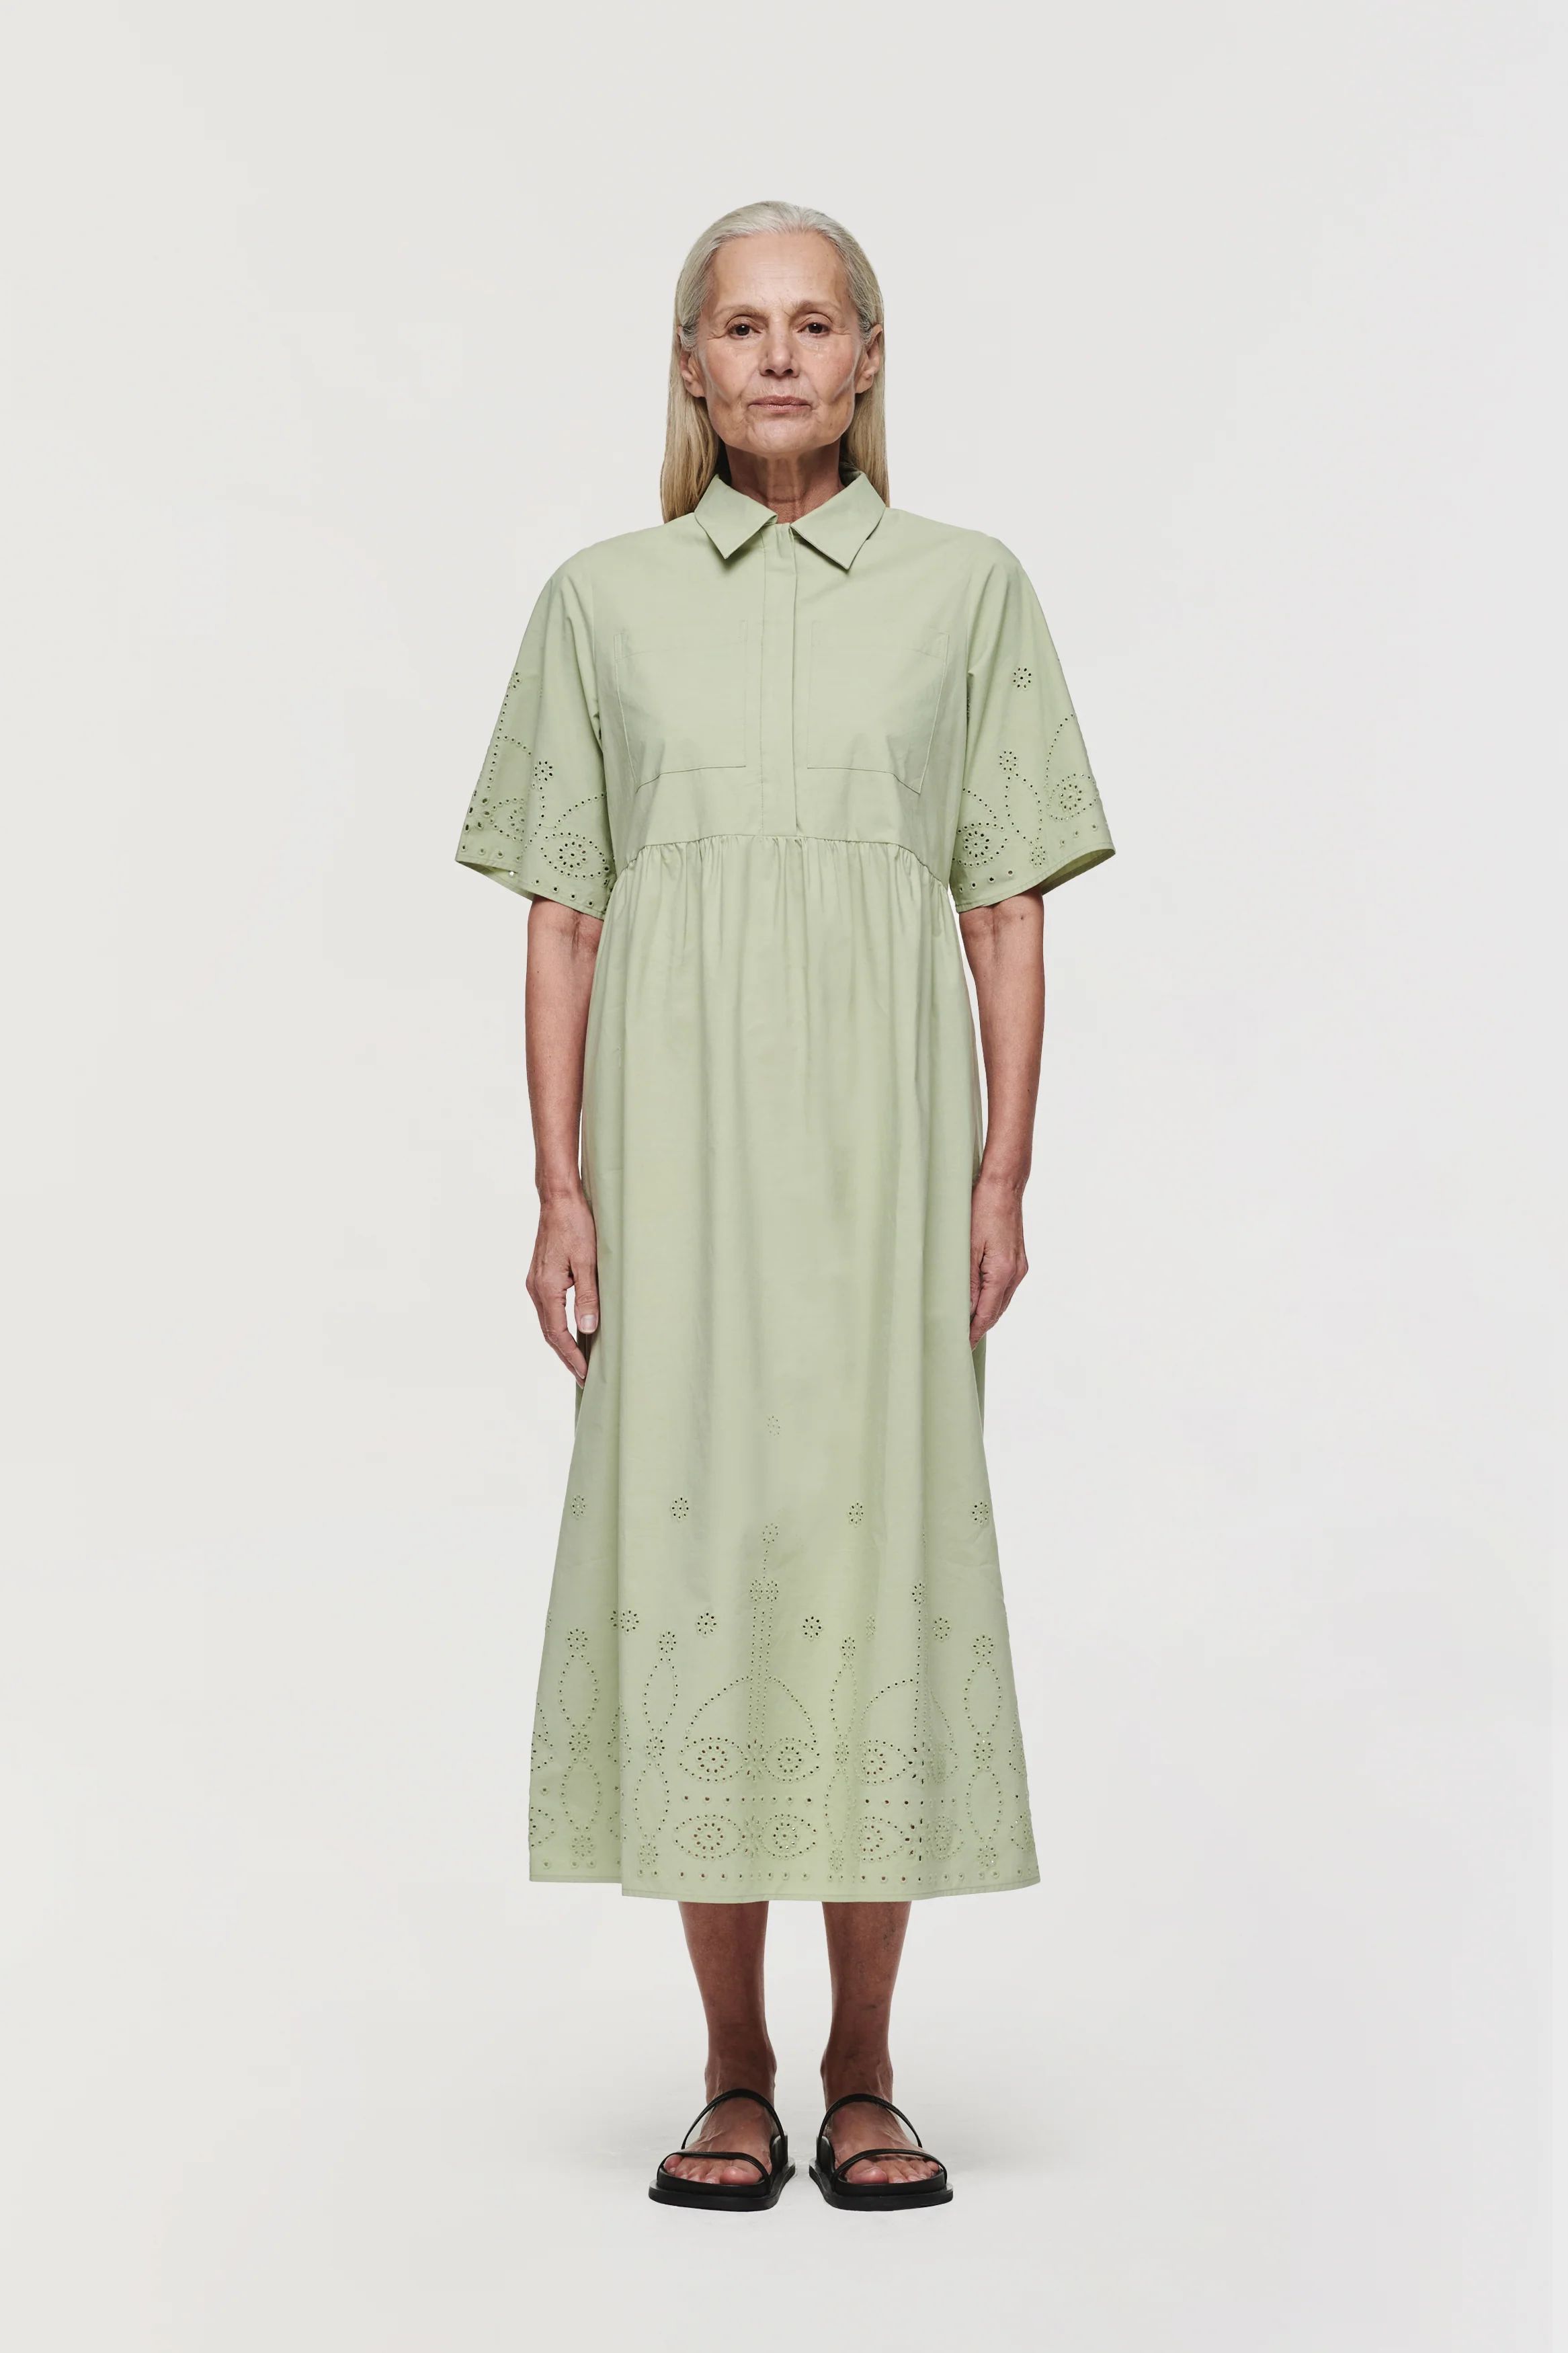 Gabriella | Short Sleeve Broderie Dress in Sage Green | ALIGNE | Aligne UK